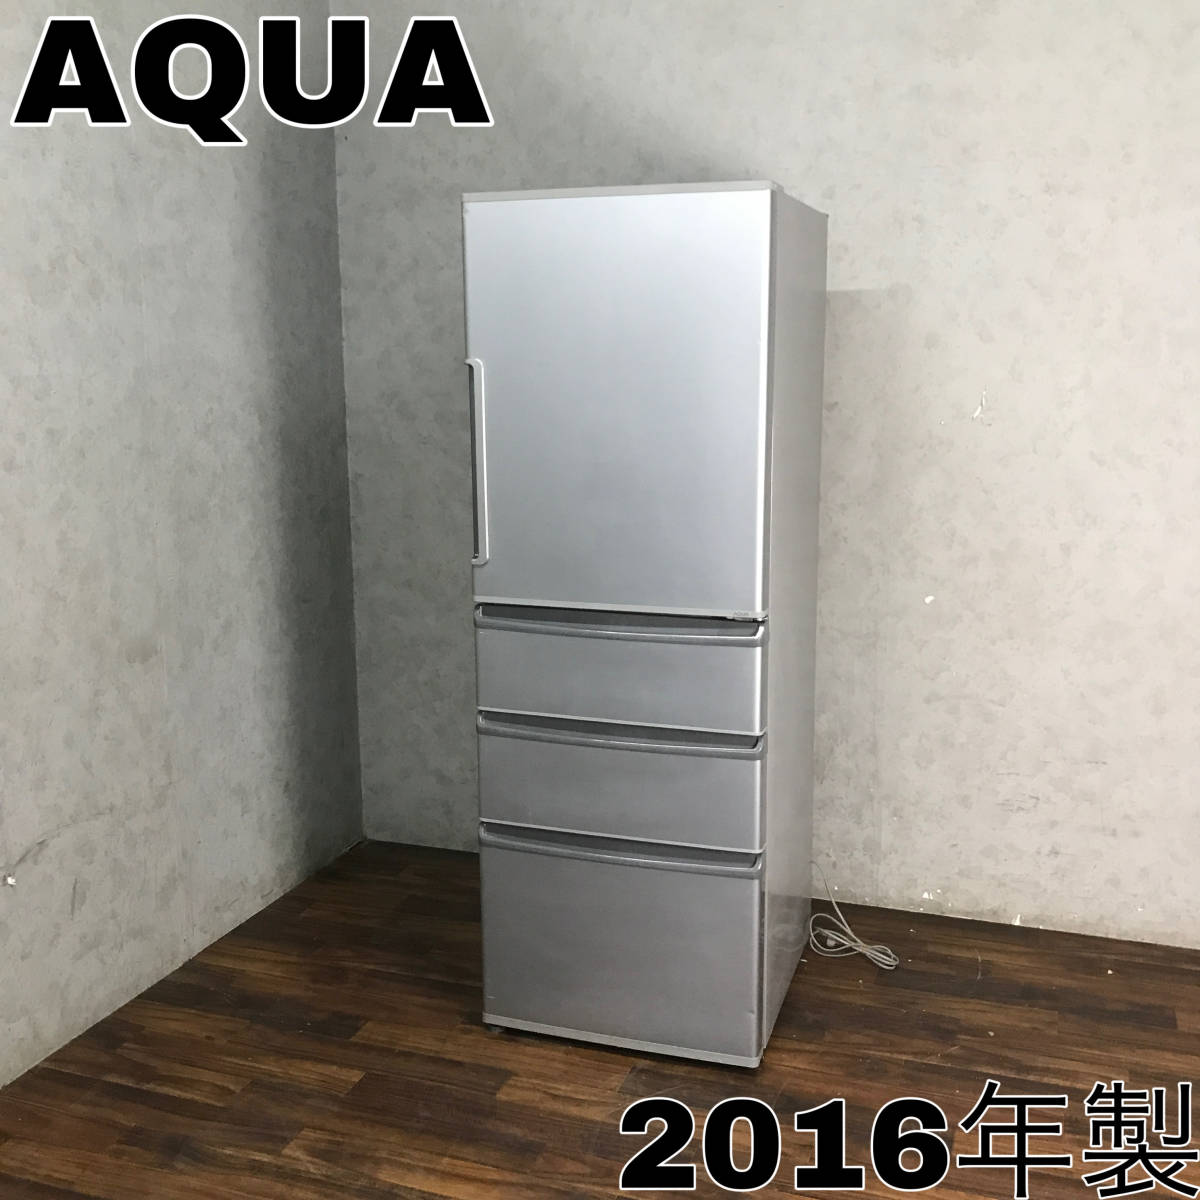 安価 ワタナベ ノンフロン冷凍冷蔵庫 AQUA アクア WY6/75 AQR-361E(S